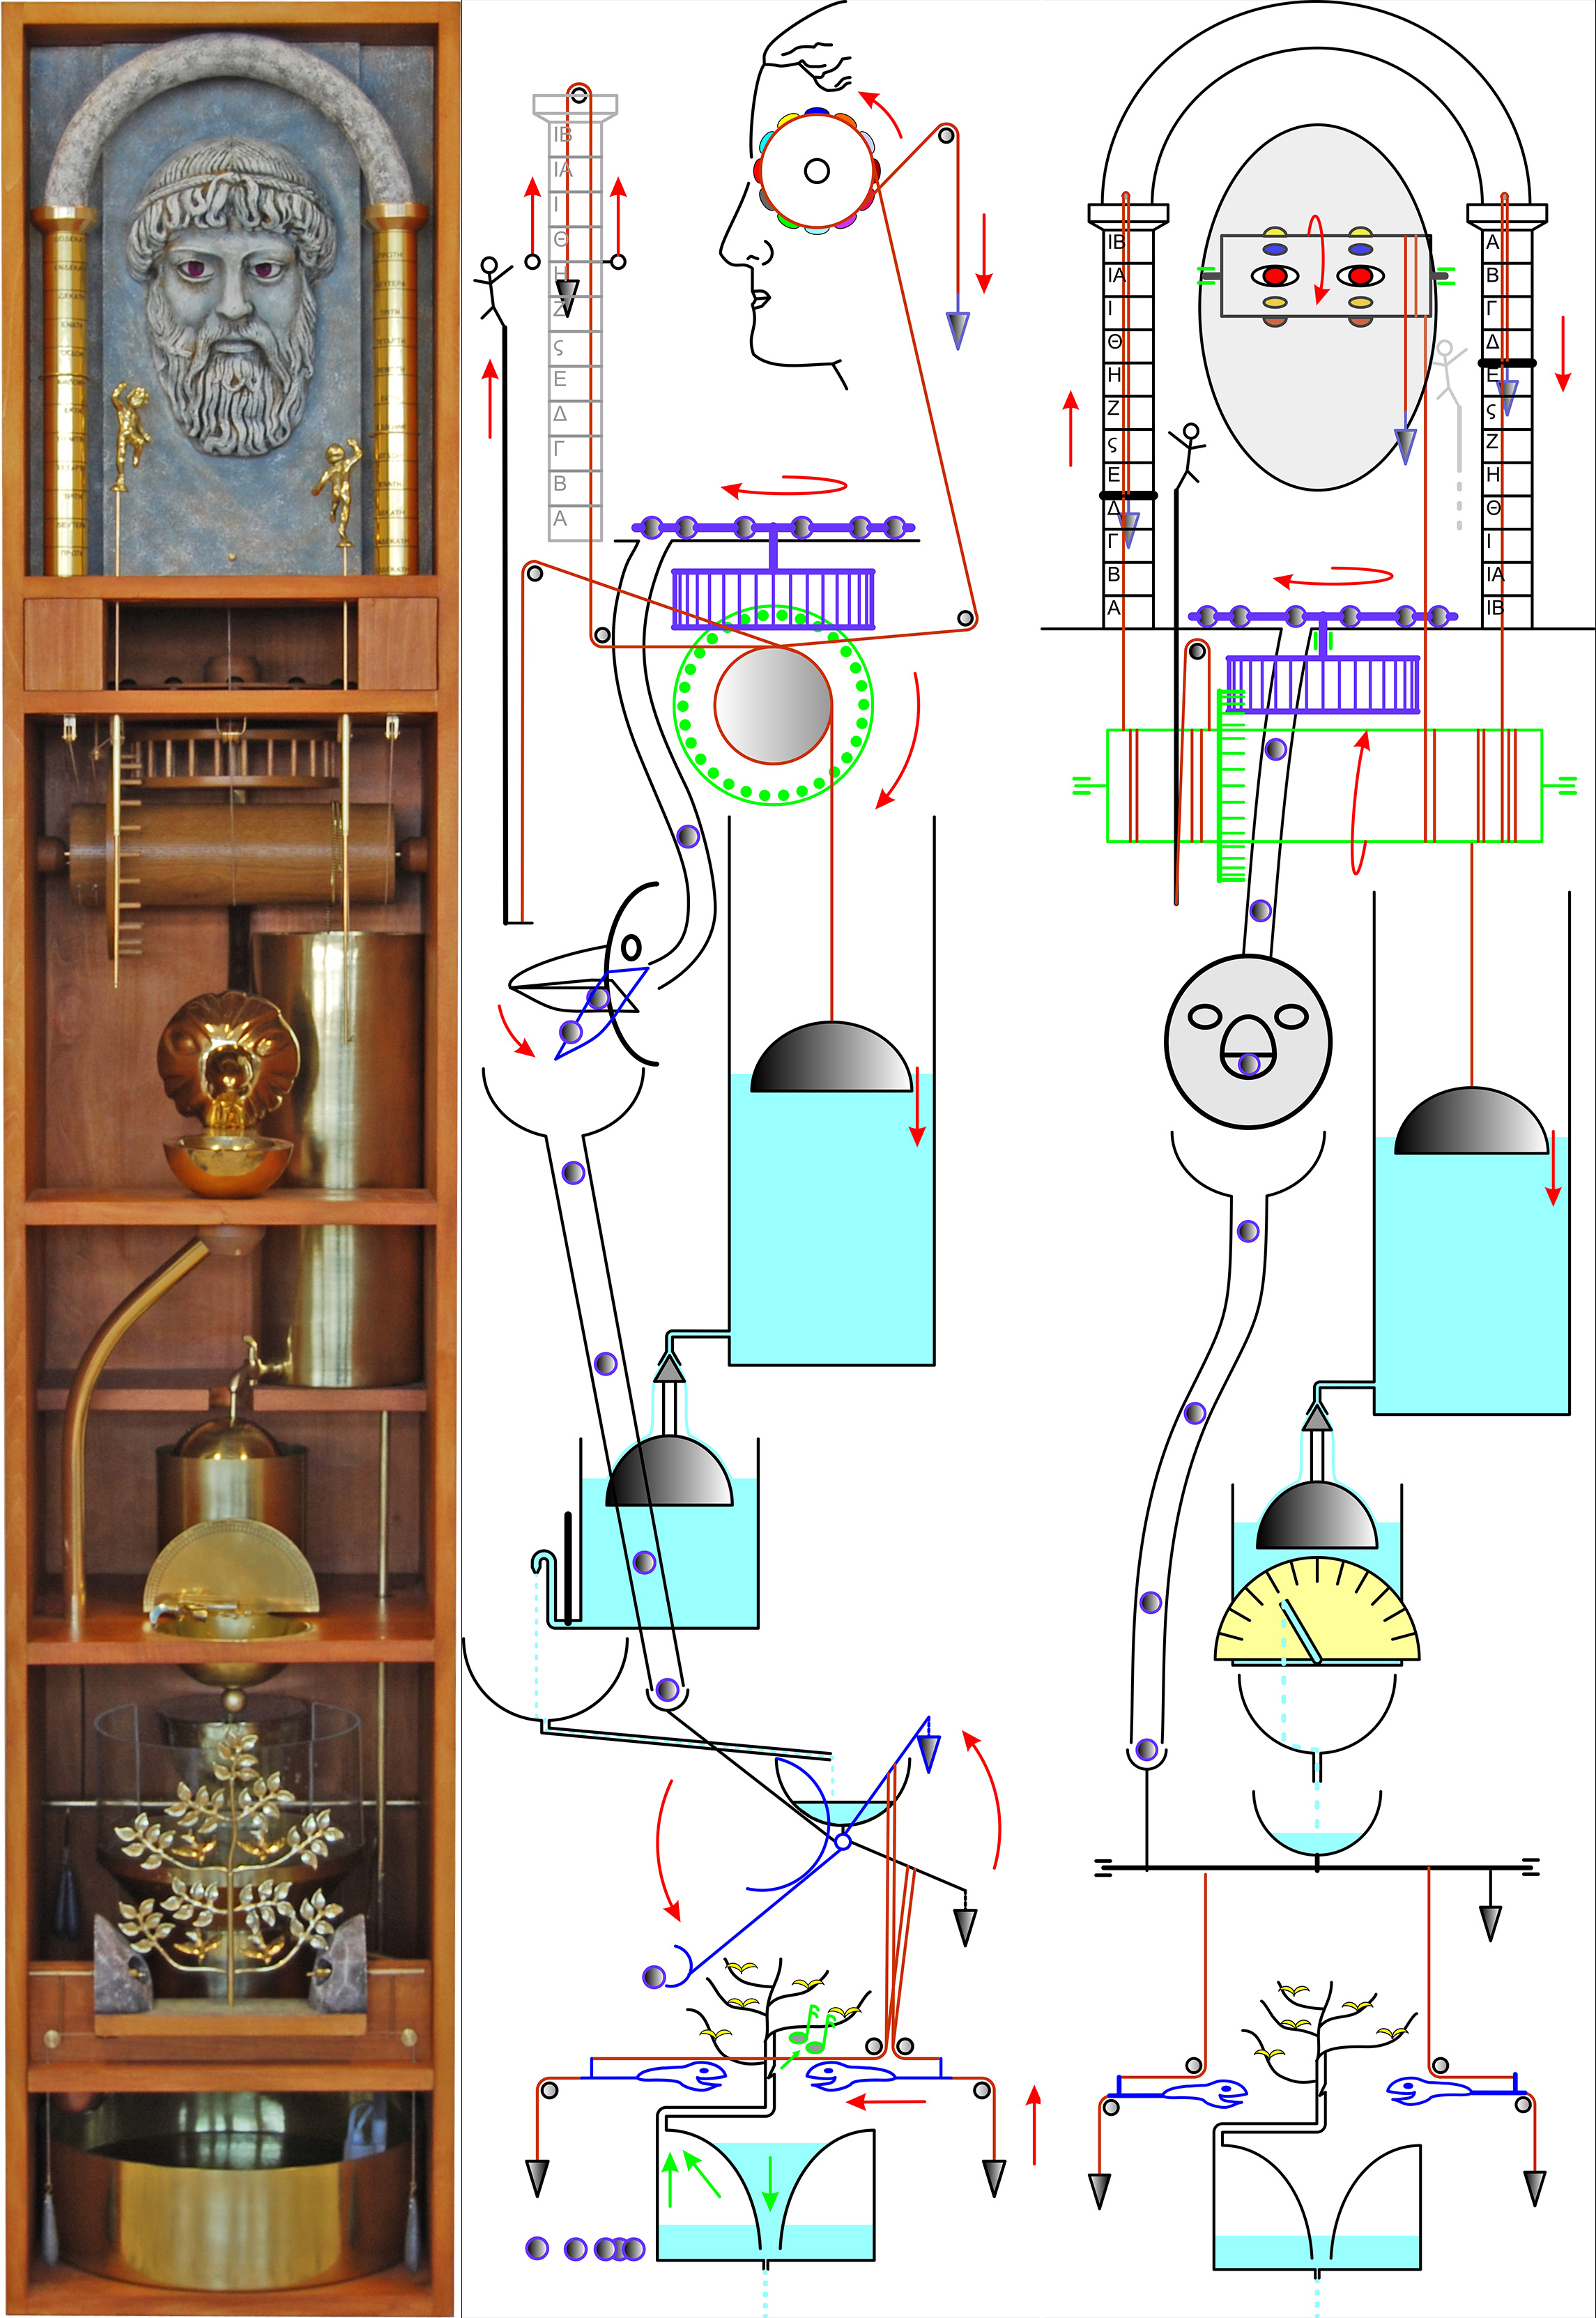 Ρολόι του Αρχιμήδη», Μουσείο Αρχαίας Ελληνικής Τεχνολογίας - Αρχαιολογία Online